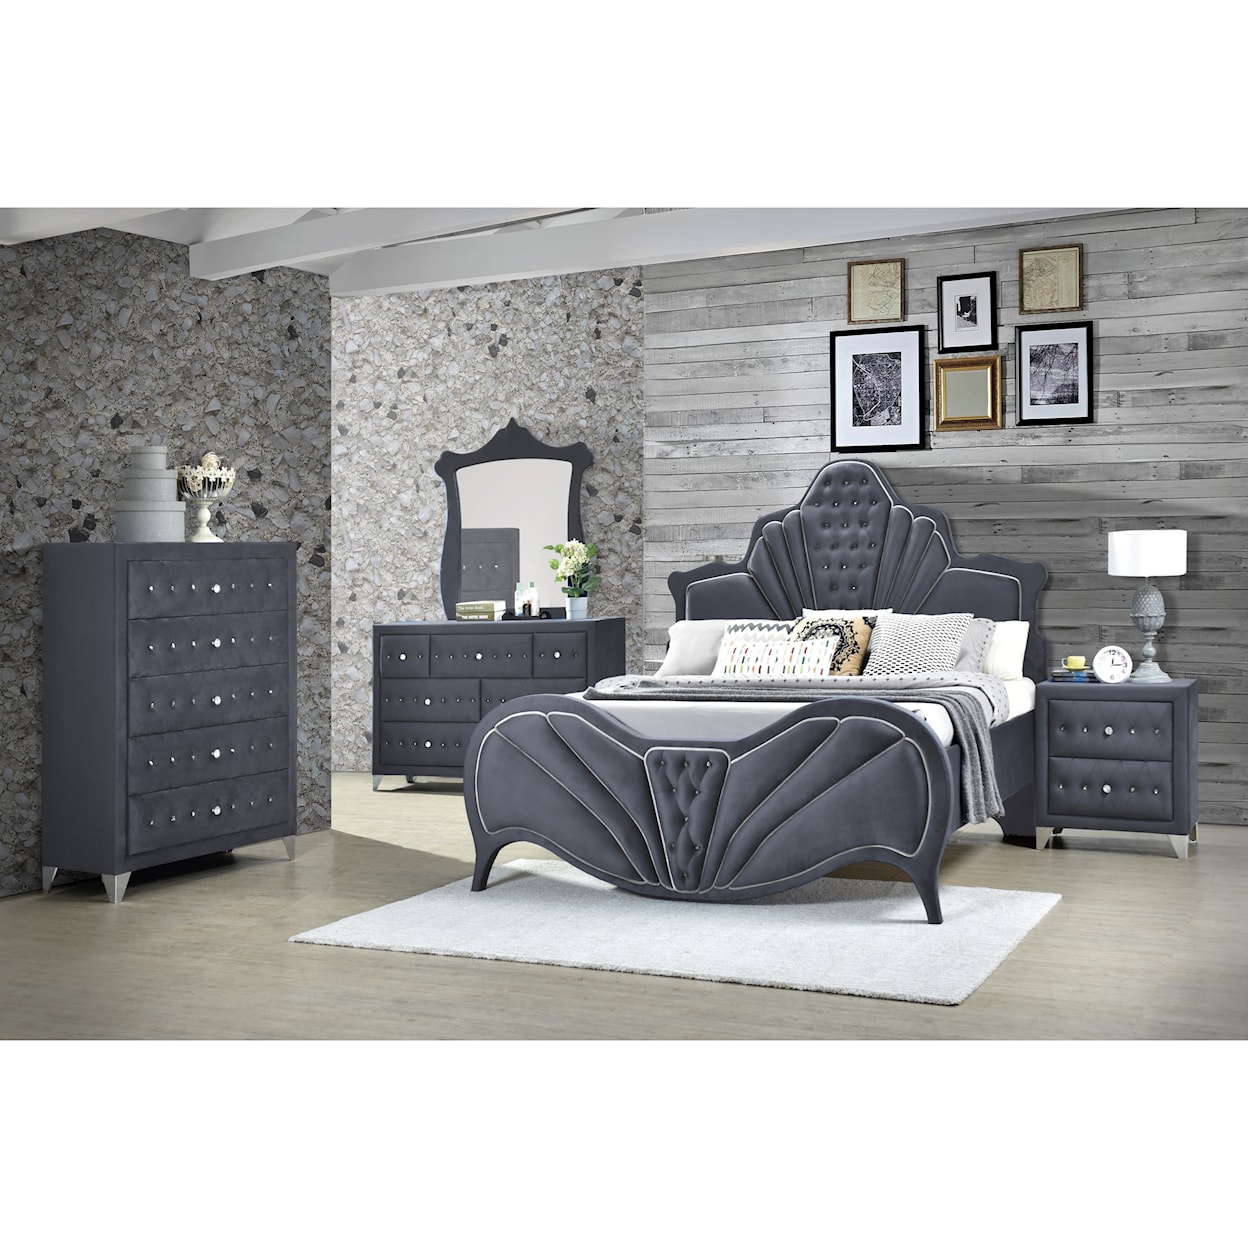 Acme Furniture Dante 7pc Queen Bedroom Group